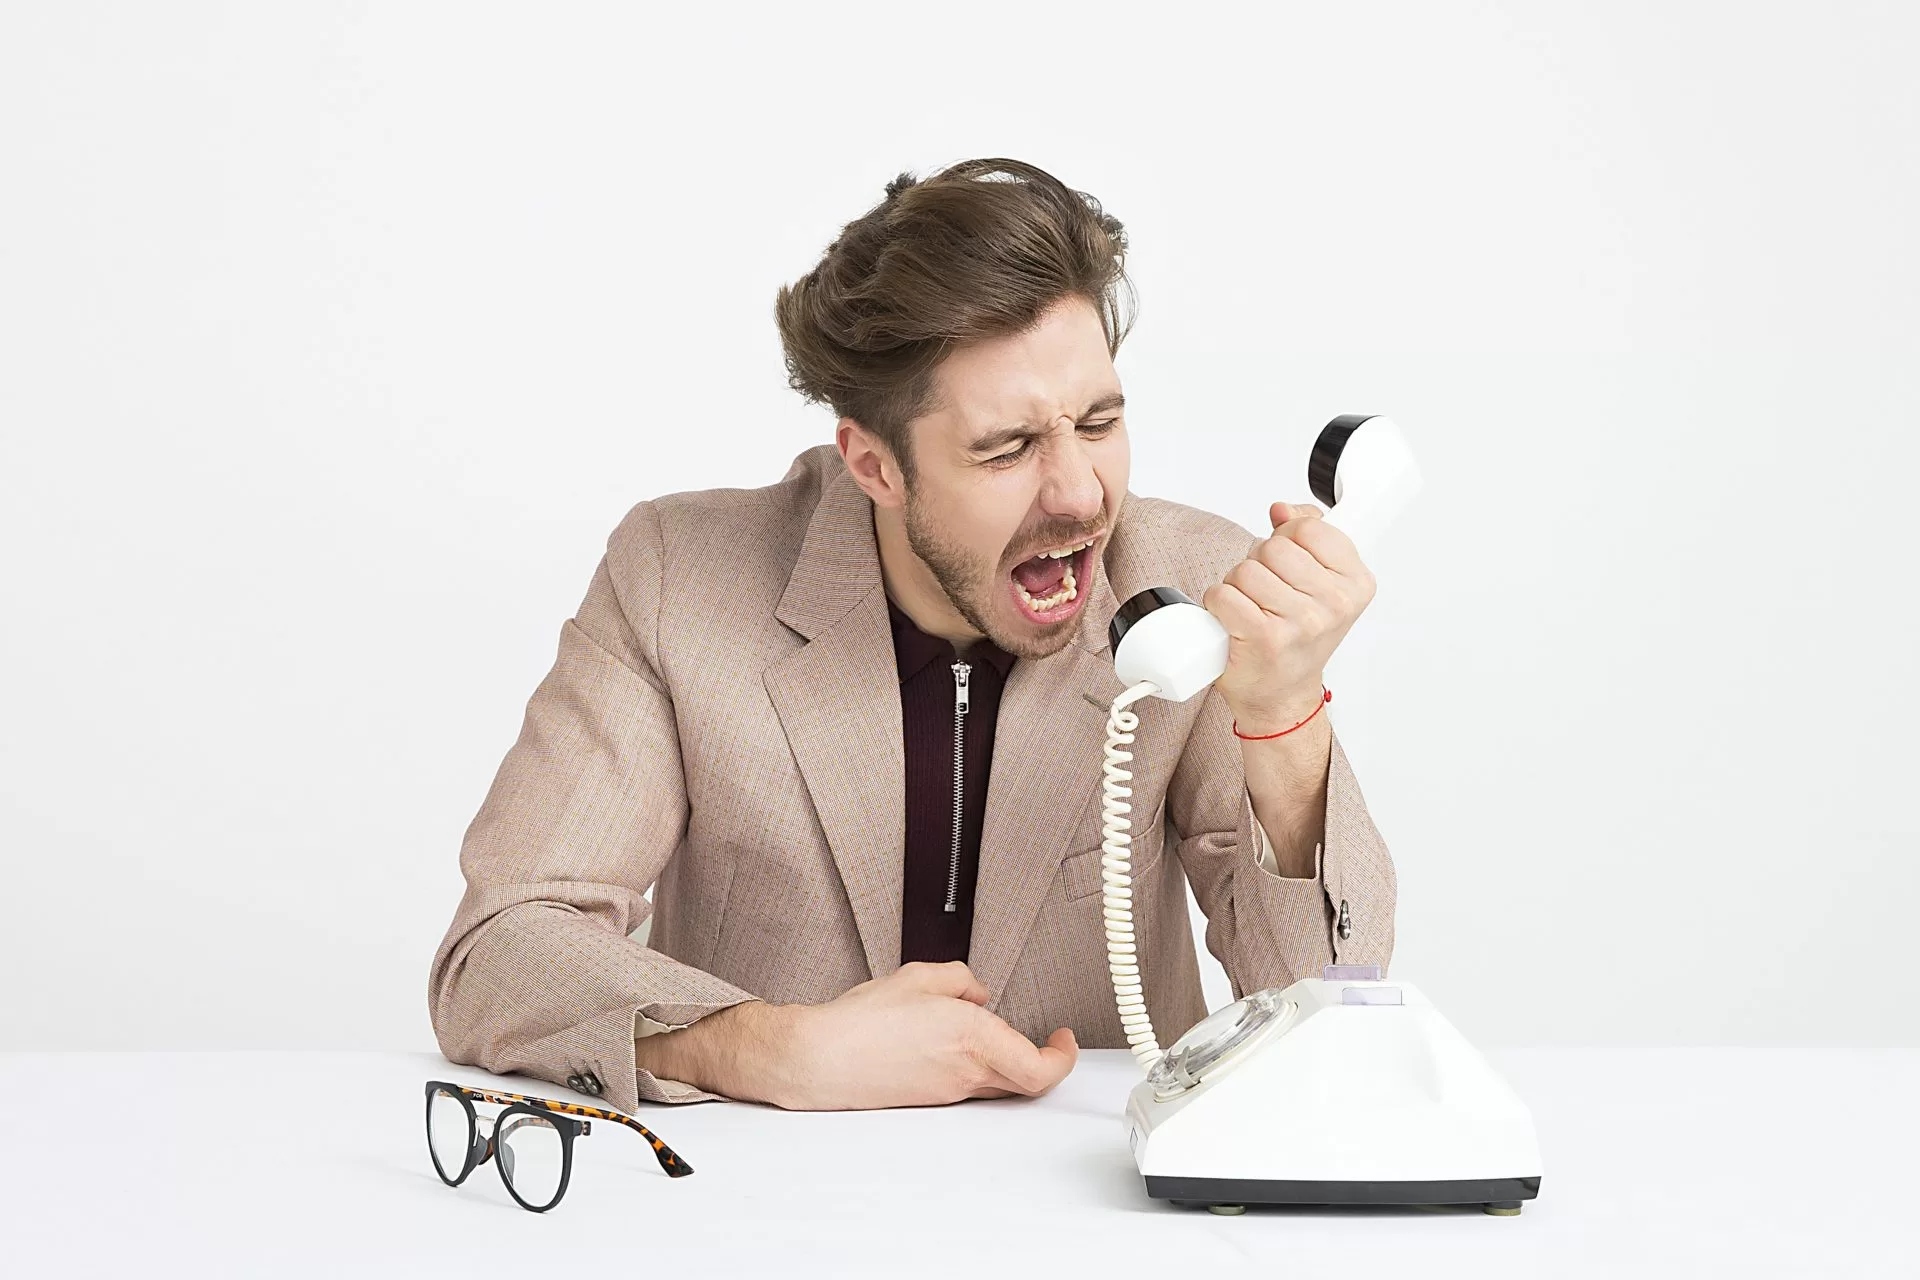 Homem vestido com terno e sentado em uma mesa aparece gritando para um telefone fixo, como recebendo uma ligação indesejada de telemarketing